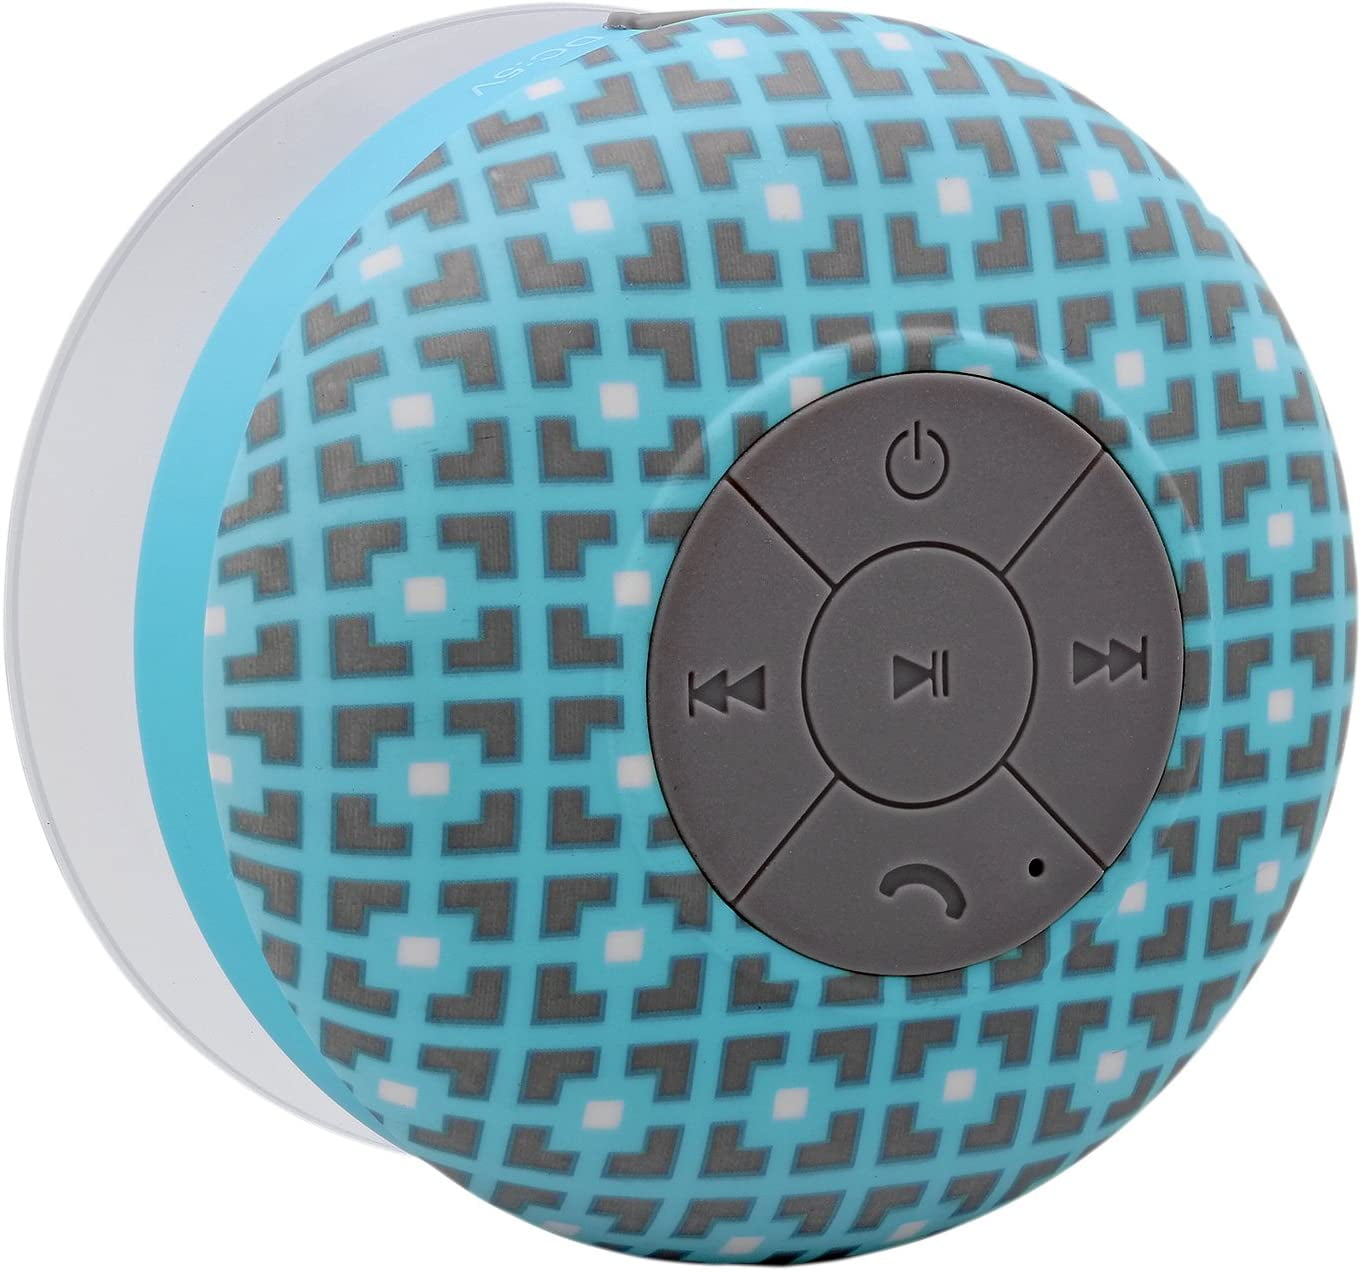 Square Aduro AquaSound WSP20 Shower Speaker Portable Waterproof Wireless Bluetooth Speaker